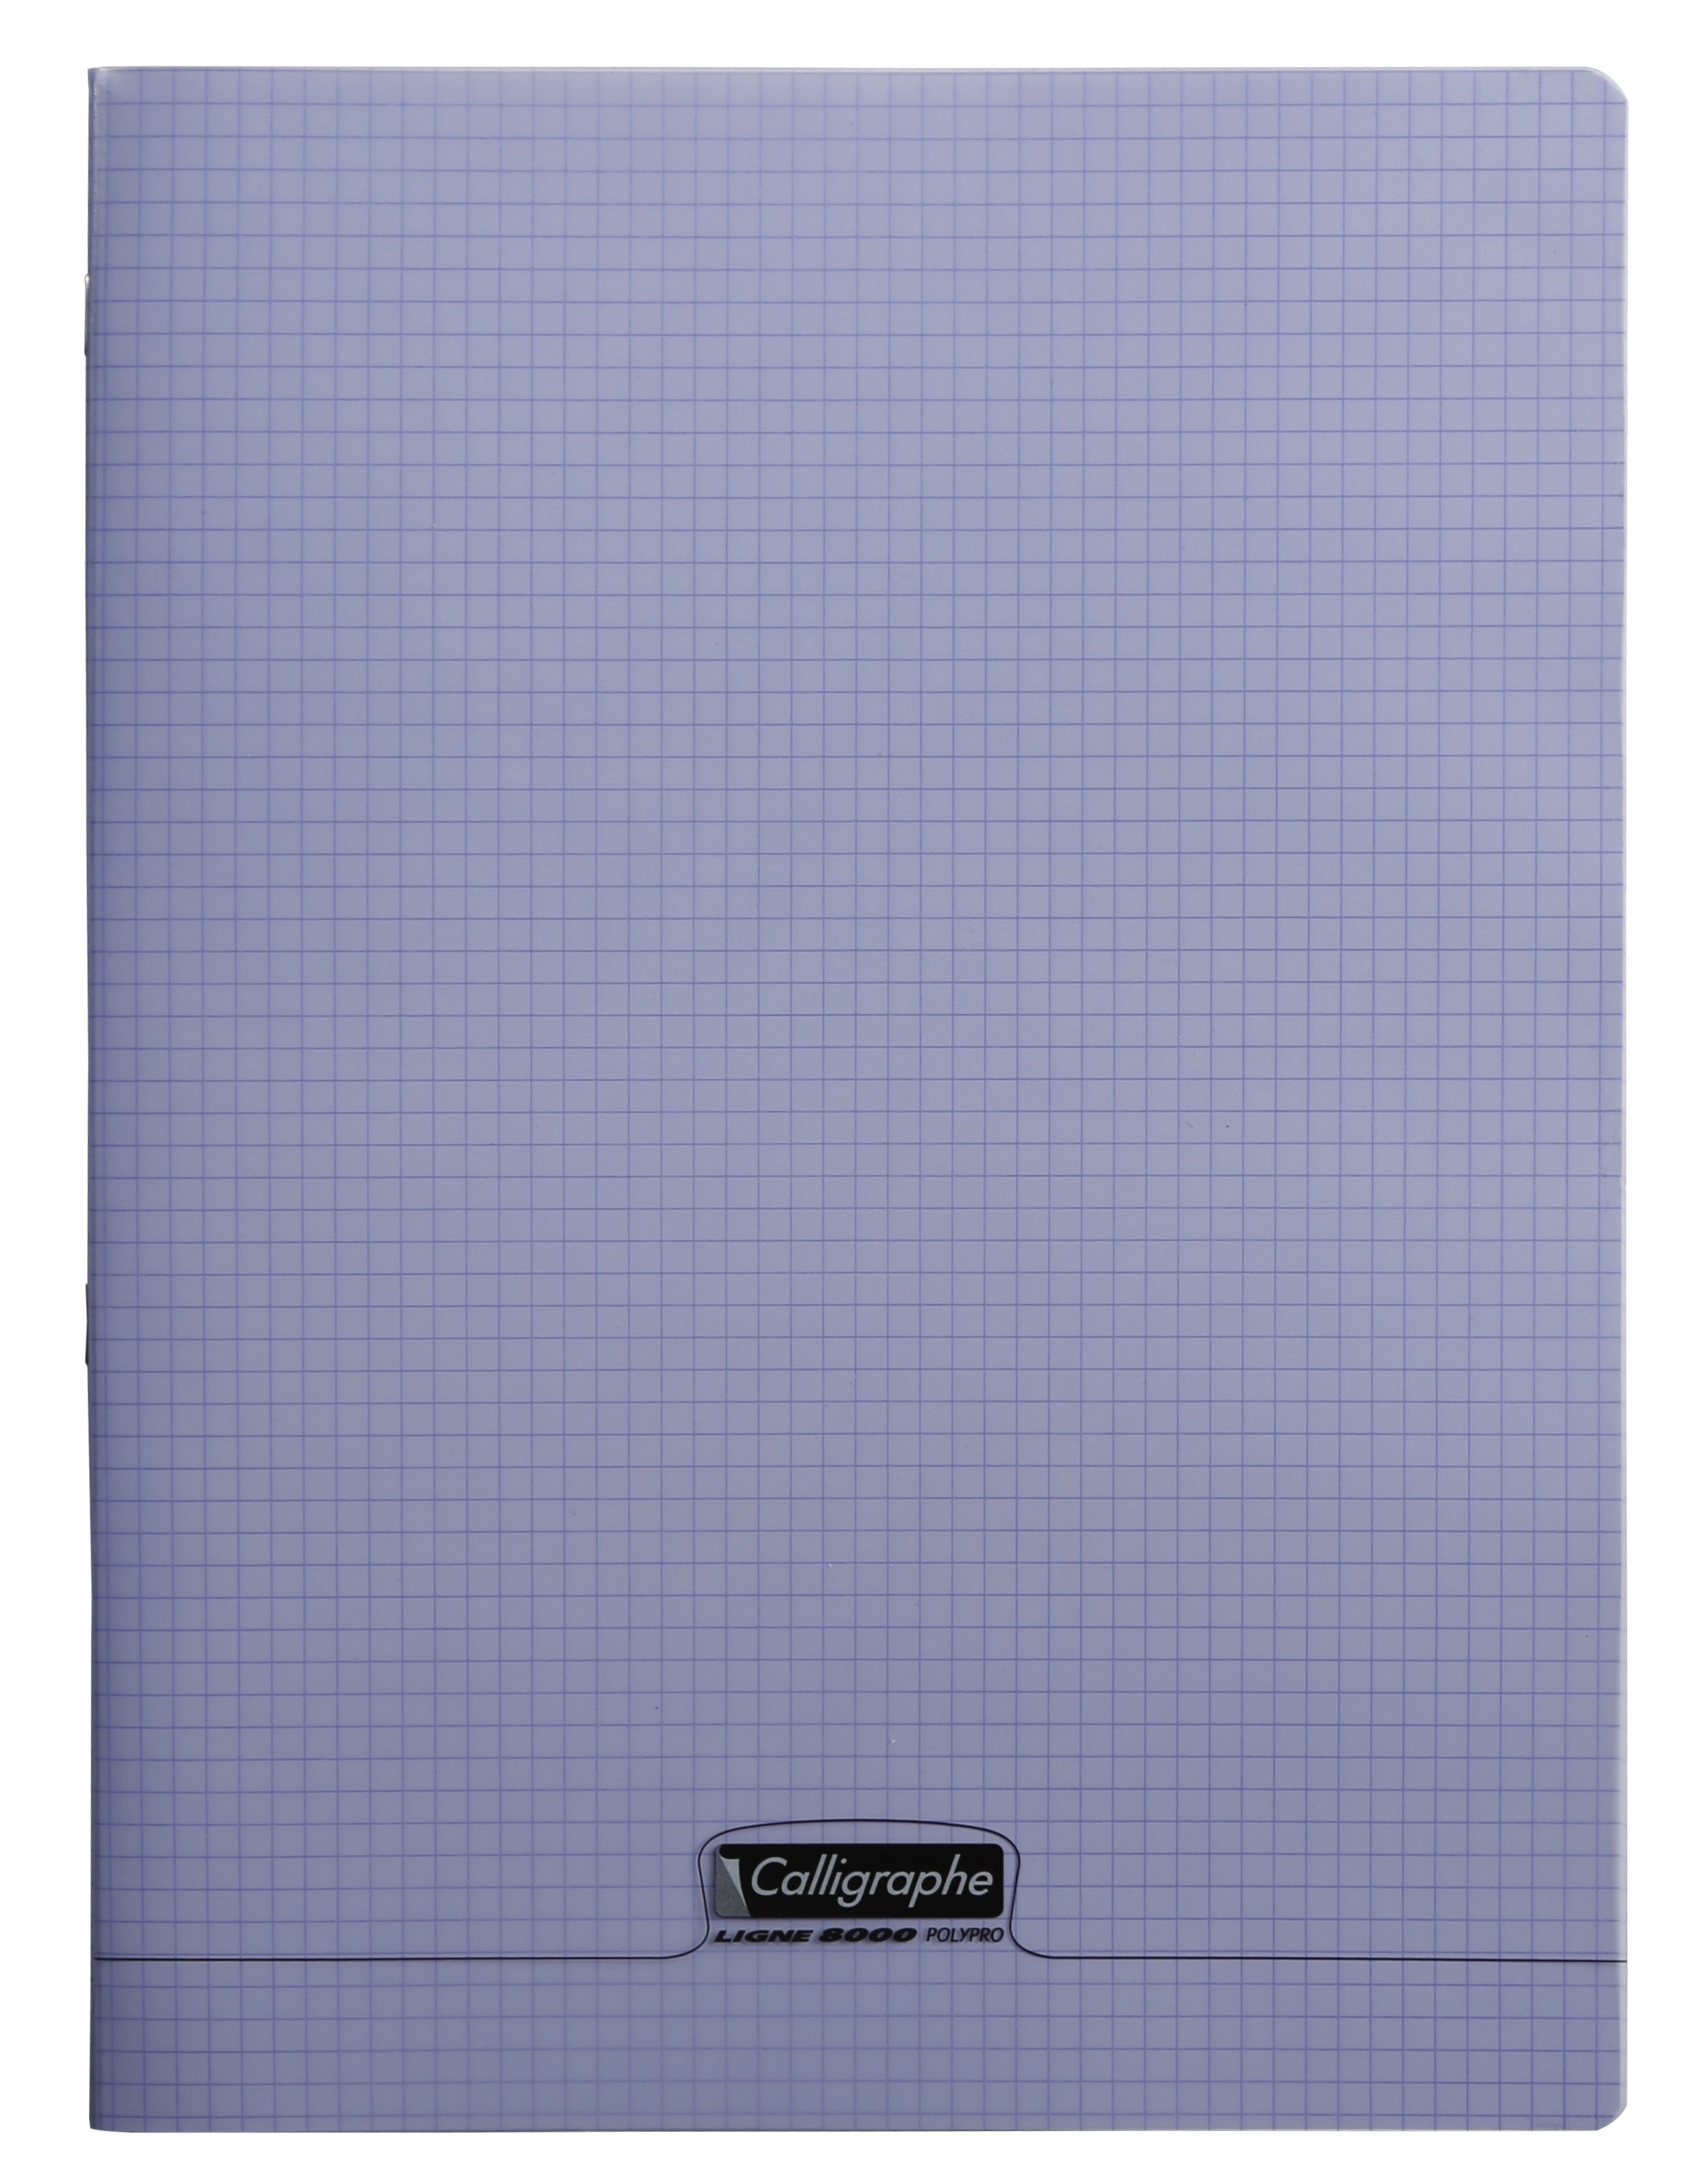 Cahier bon qualité grand format 21x 29.7 cm 96 pages petit carreaux دفترحجم  كبير96 صفحة من